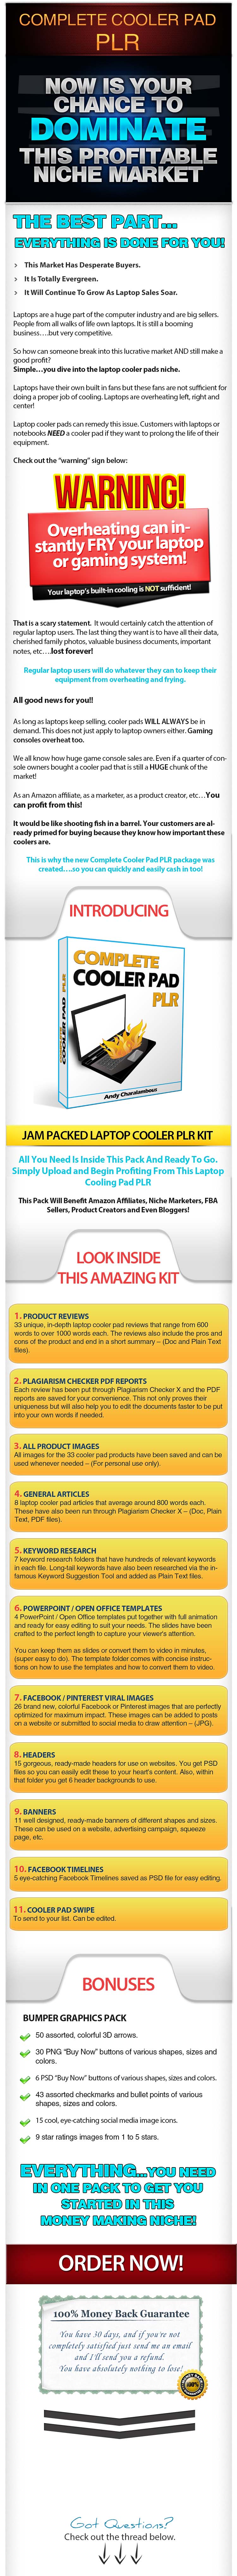 Cooler Pad PLR = Sales Page - test